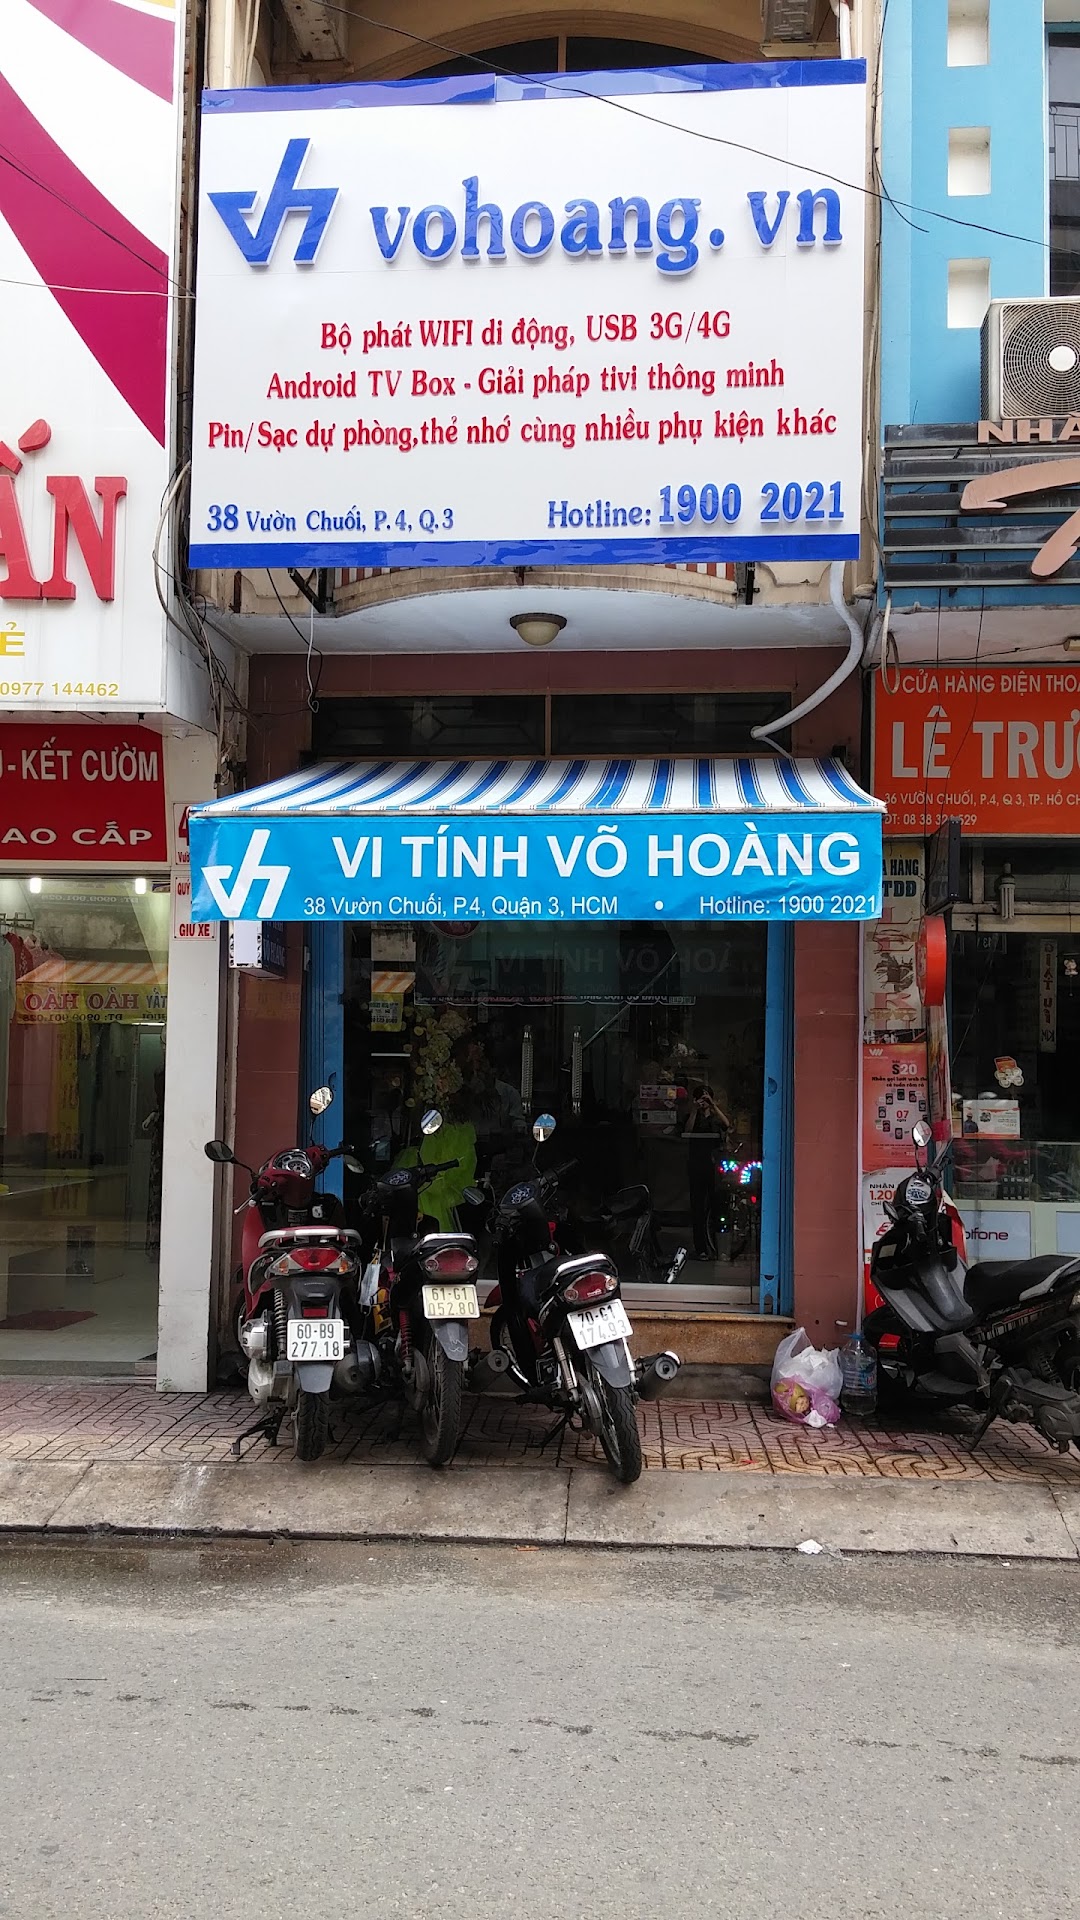 Vi tính Võ Hoàng - VoHoang.vn